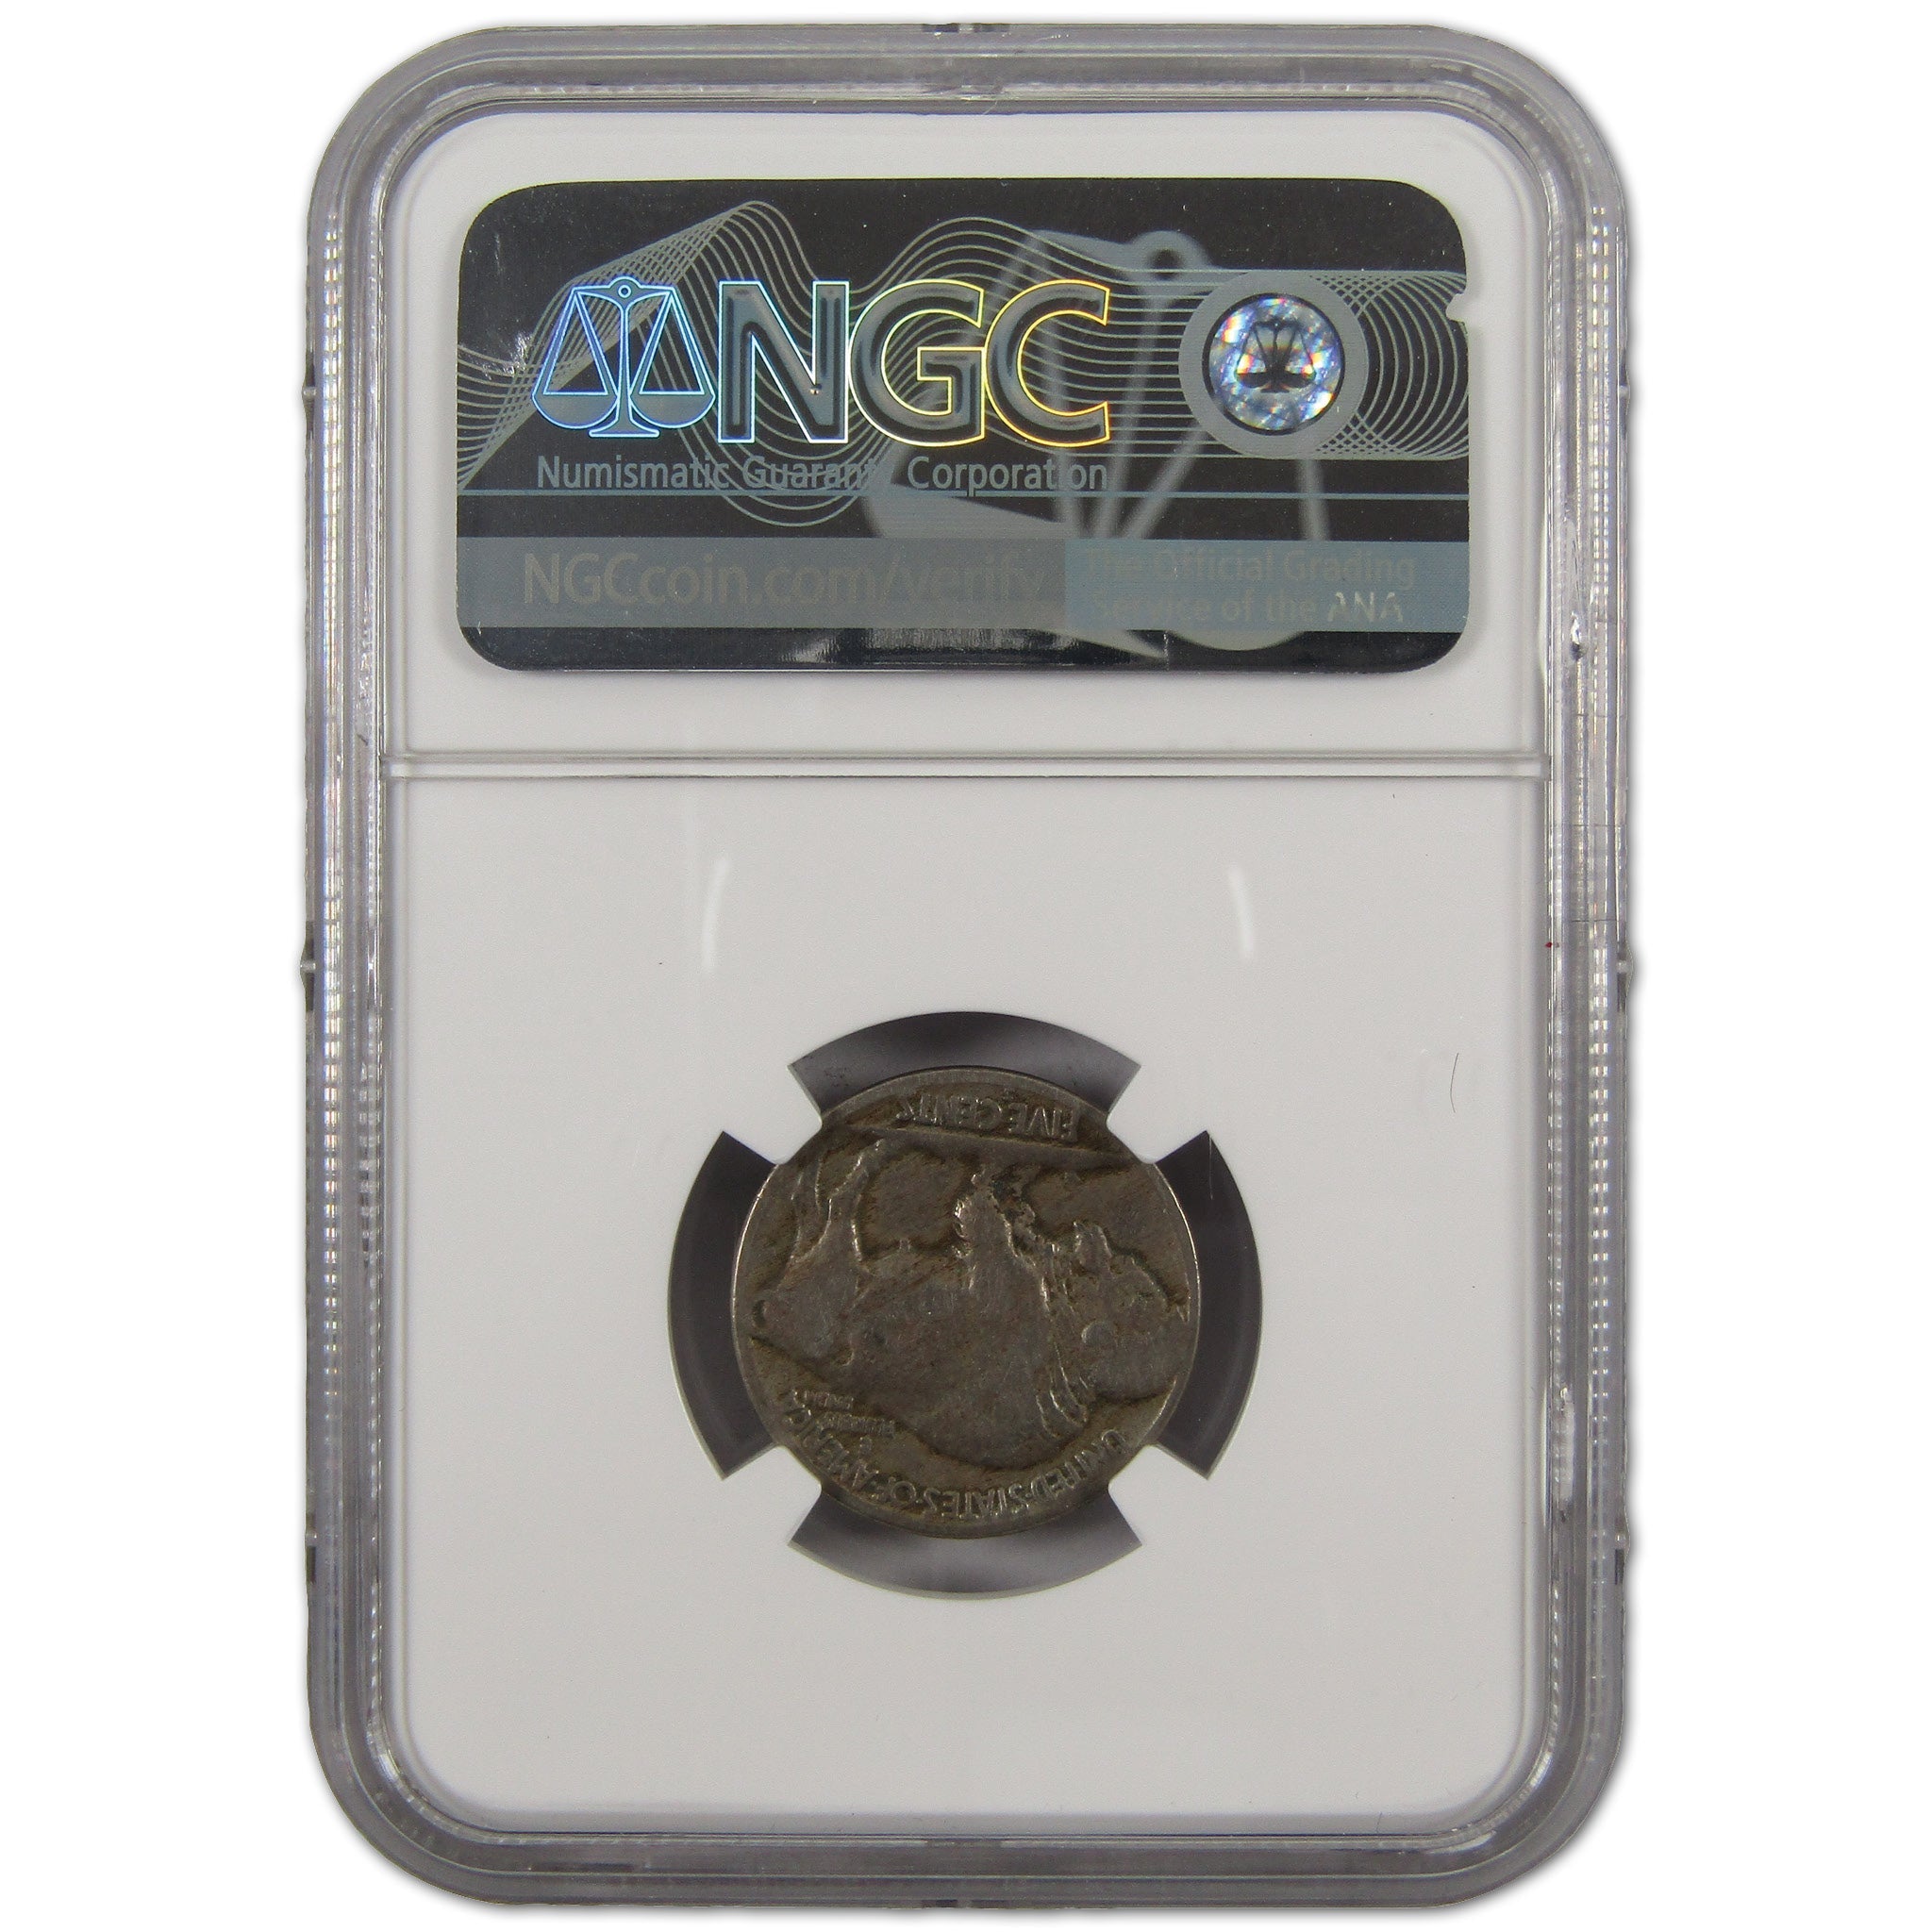 1921 S Indian Head Buffalo Nickel VG 10 NGC 5c Coin SKU:I10771